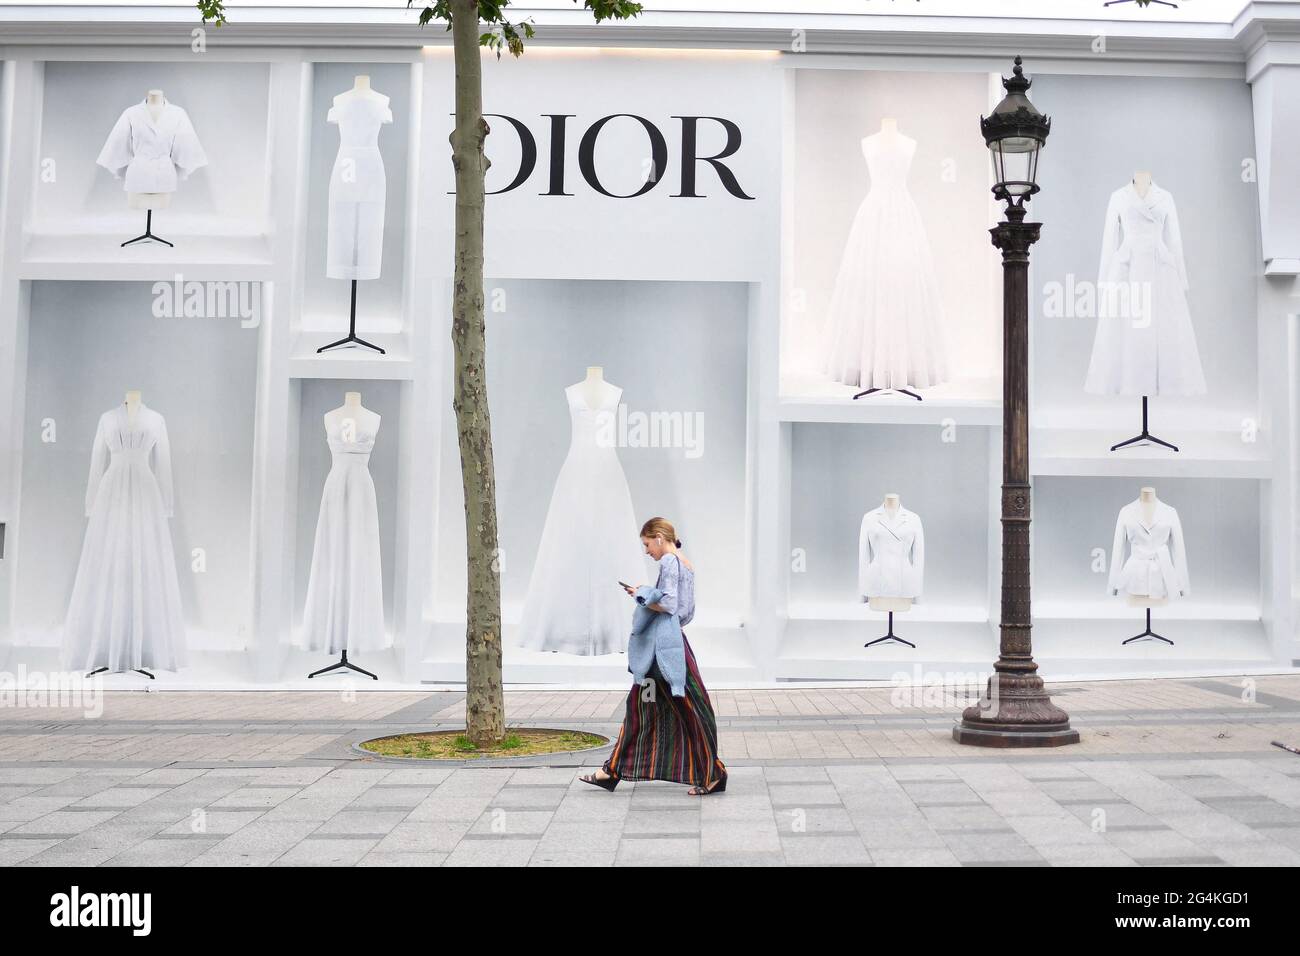 Paris, France - Champs Elysées Paris, Always Amazing Louis Vuitton ou Dior?  Louis Vuitton or Dior? Crédit Photo: @jrst_axel Follow us on IG:  @champselysees_paris www.champselysees-paris.com © Paris, Always an Amazing  idea!a #paris #